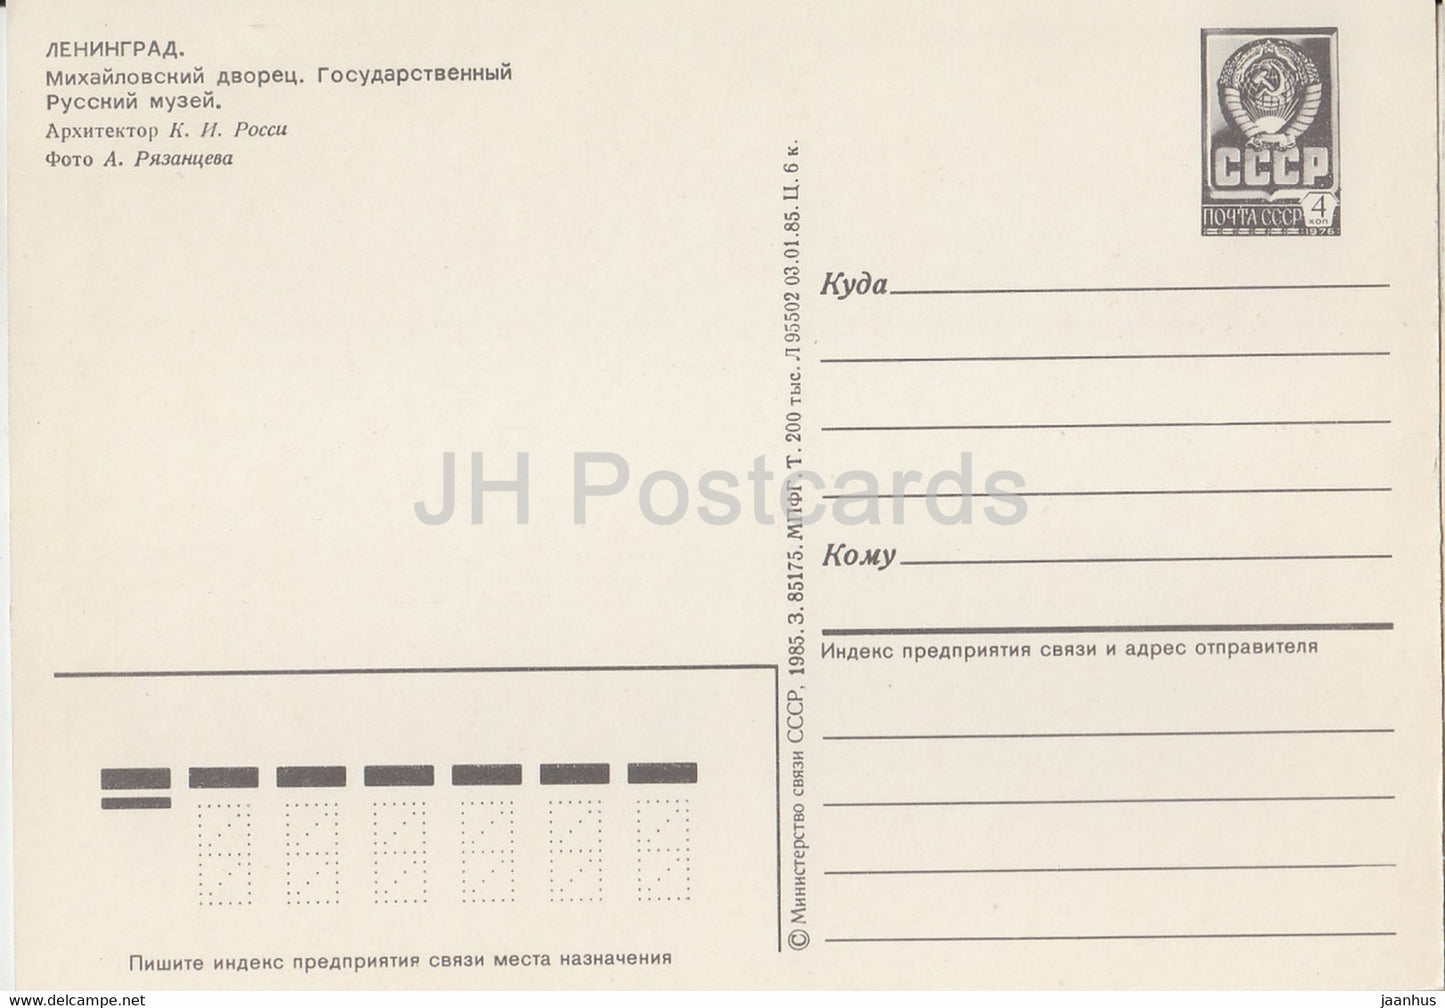 Leningrad - St Petersburg - Mikhailovsky Palace - Russian State Museum - postal stationery - 1985 - Russia USSR - unused